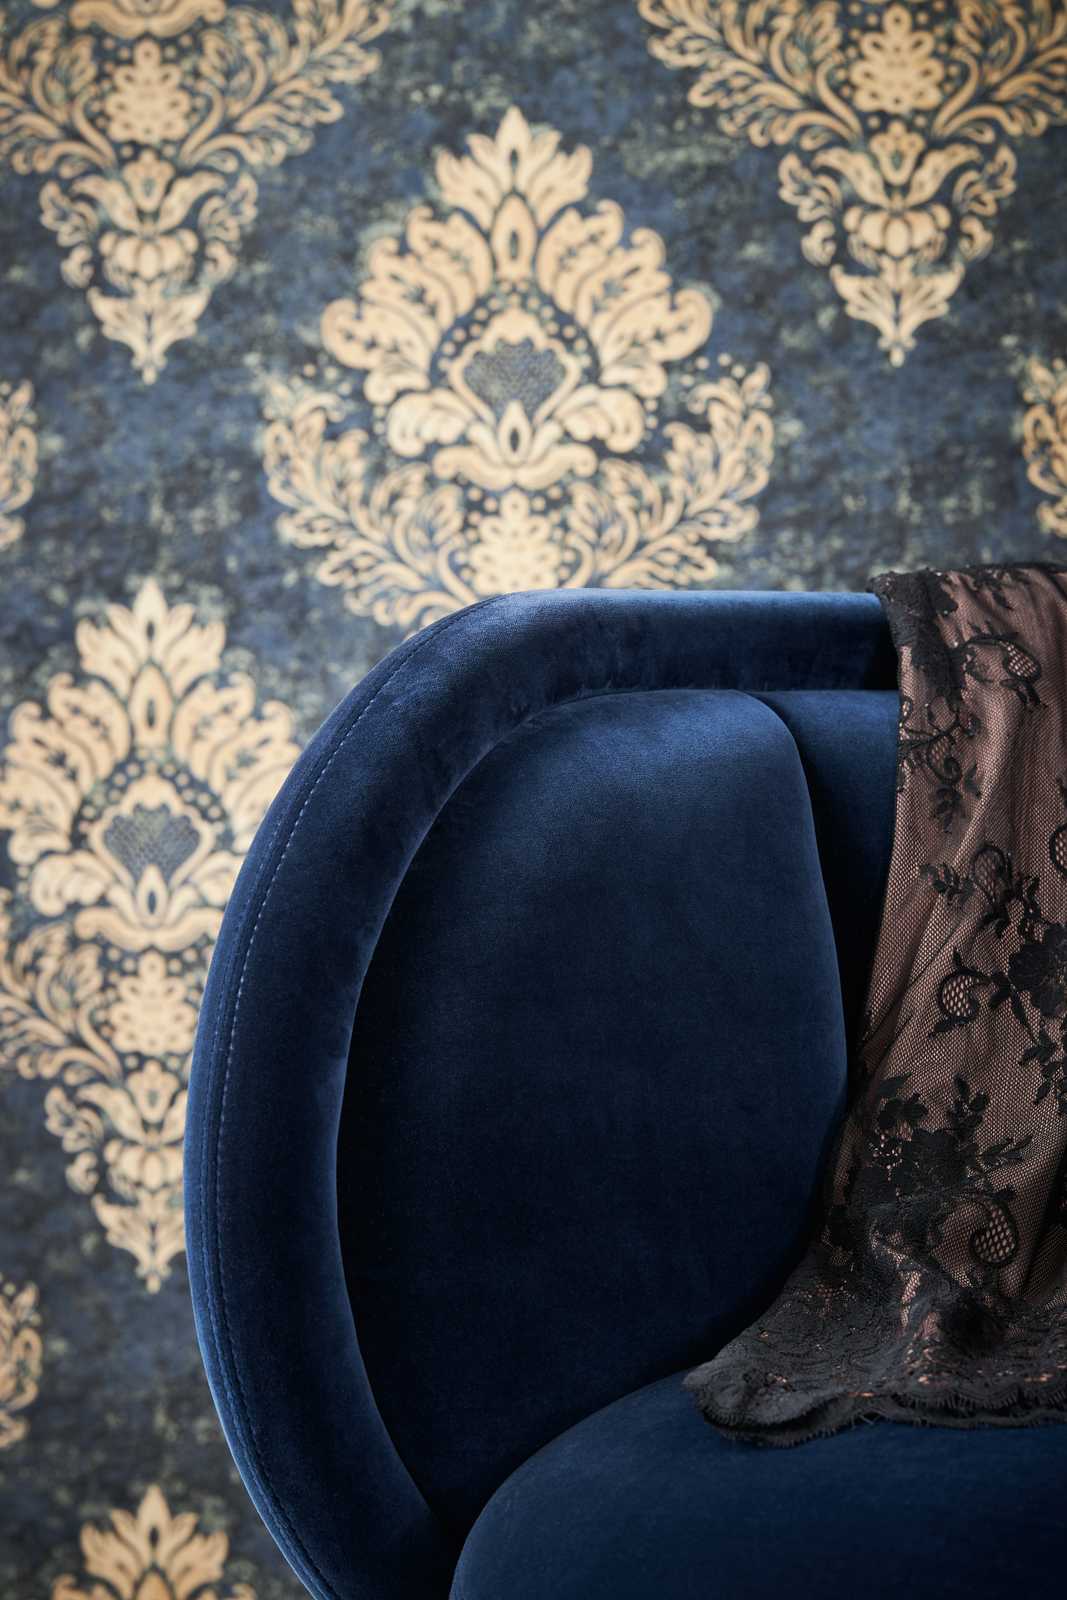             Ornamentaal behang met bloemmotief & goudeffect - beige, blauw, bruin
        